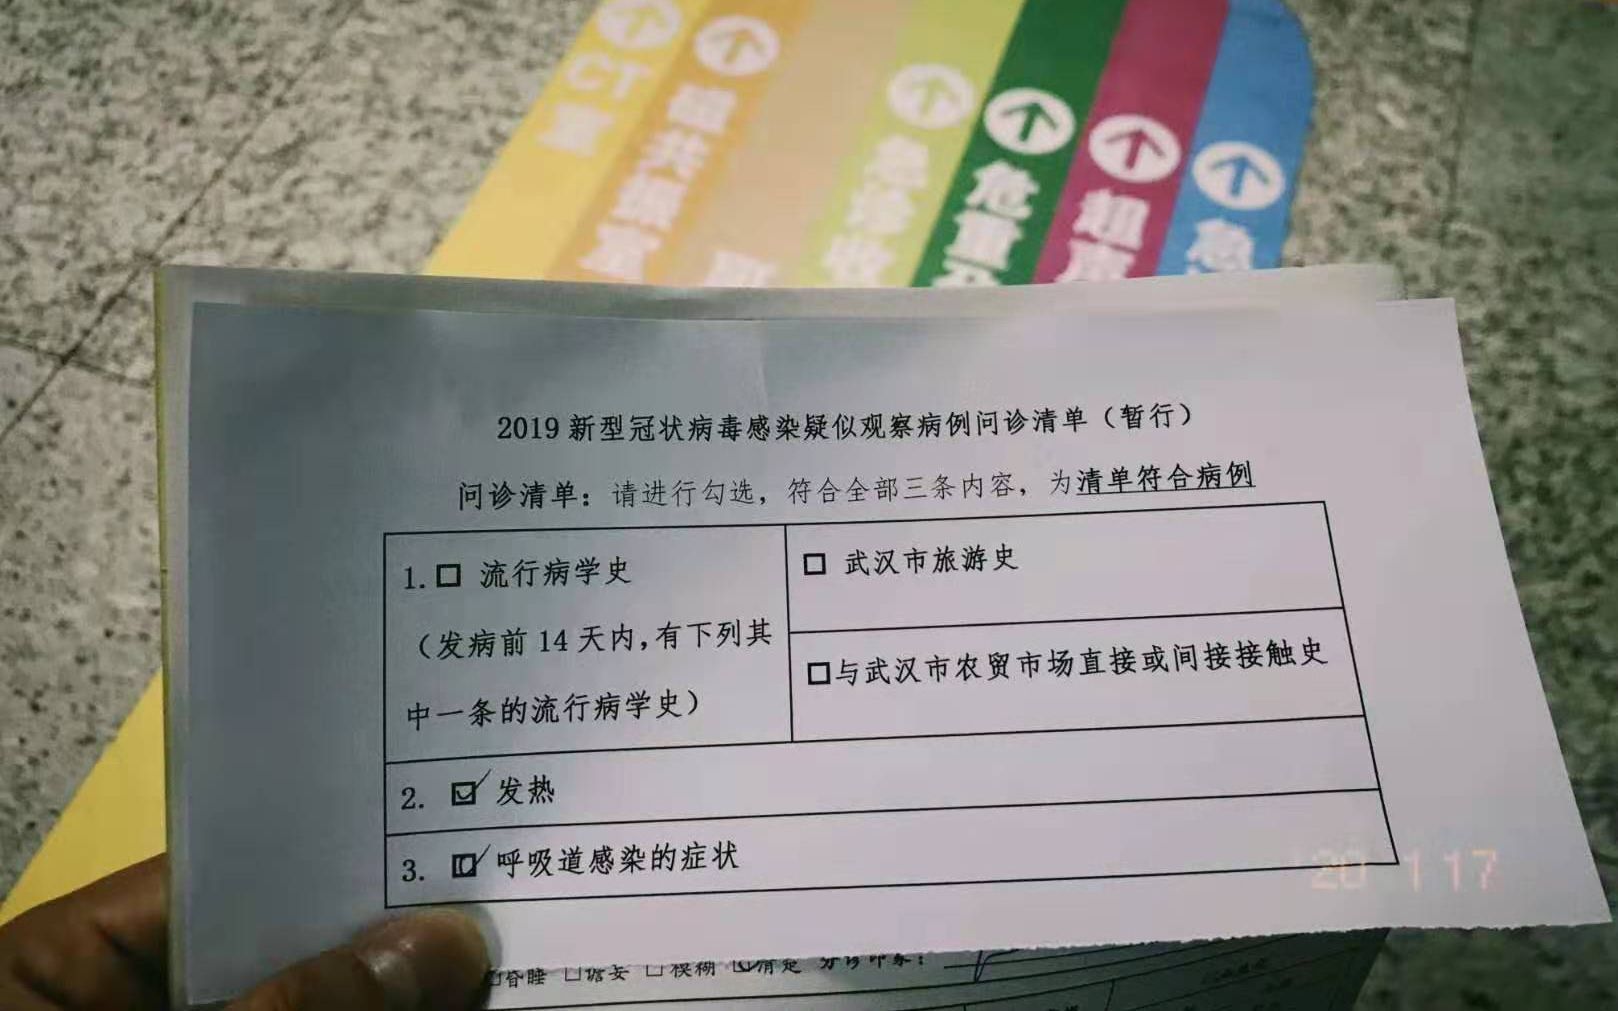 北京出现新型冠状病毒肺炎病例 医院启动筛查、发放口罩